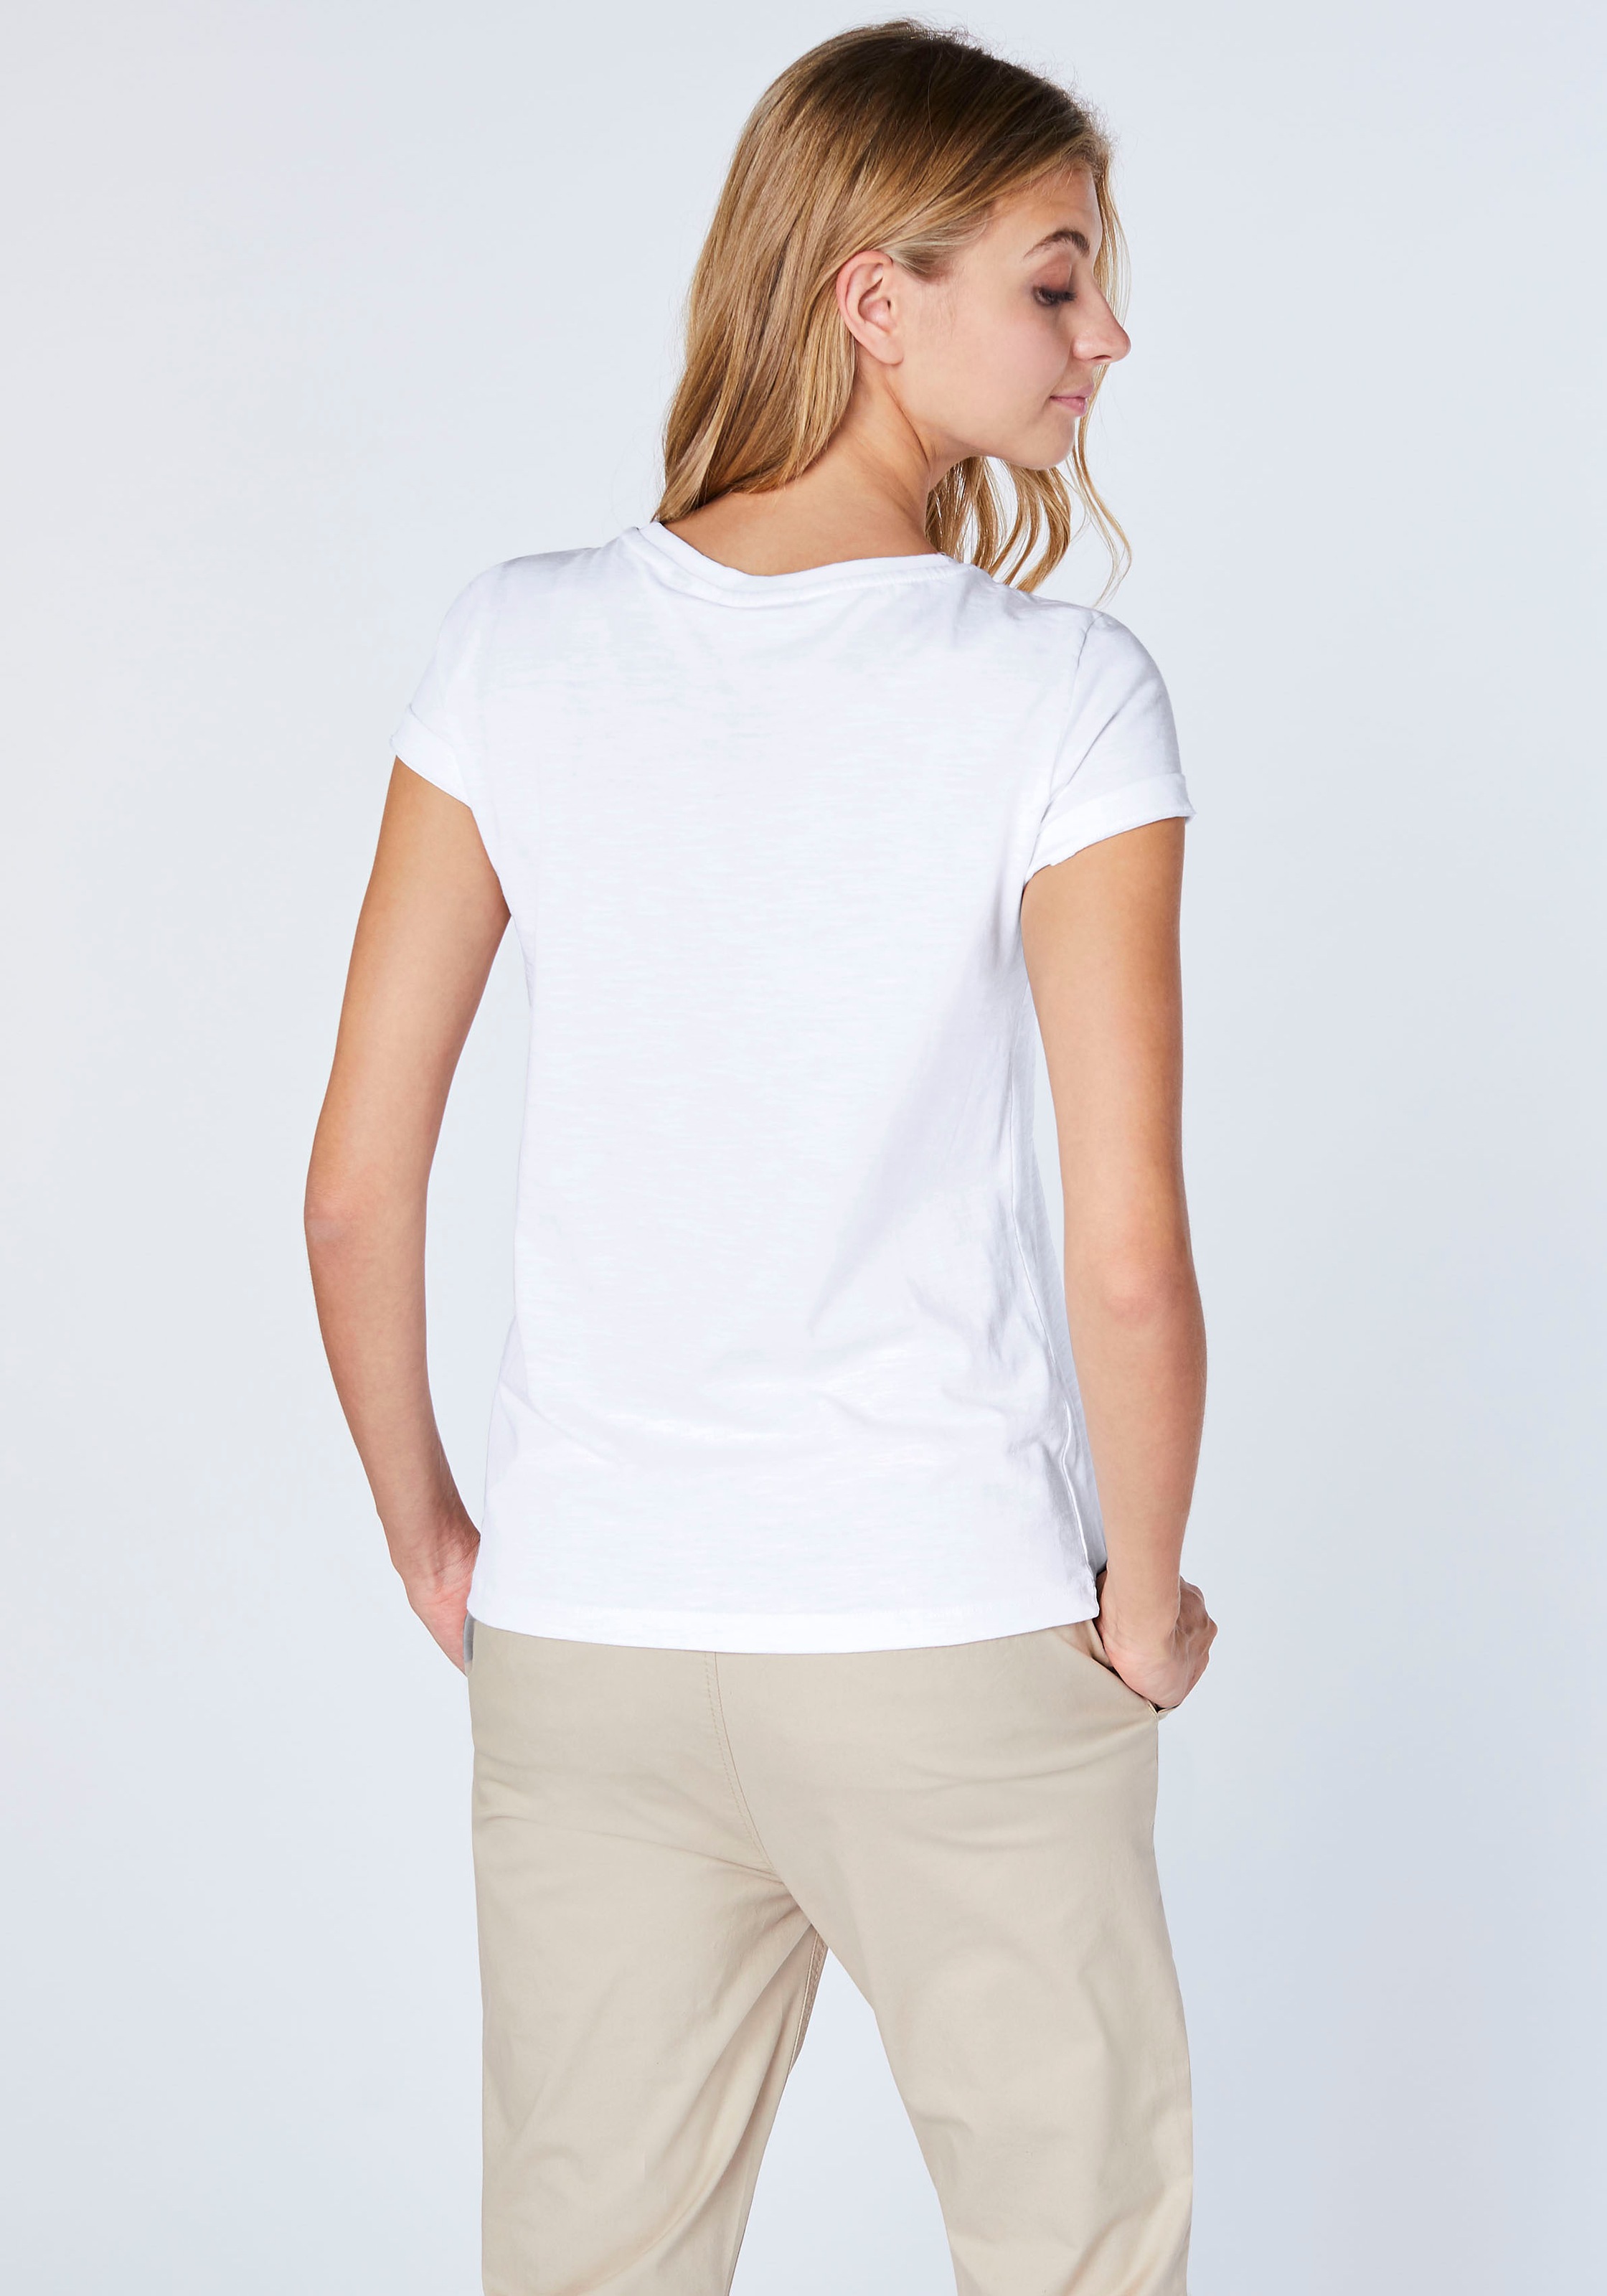 Chiemsee T-Shirt für kaufen | BAUR